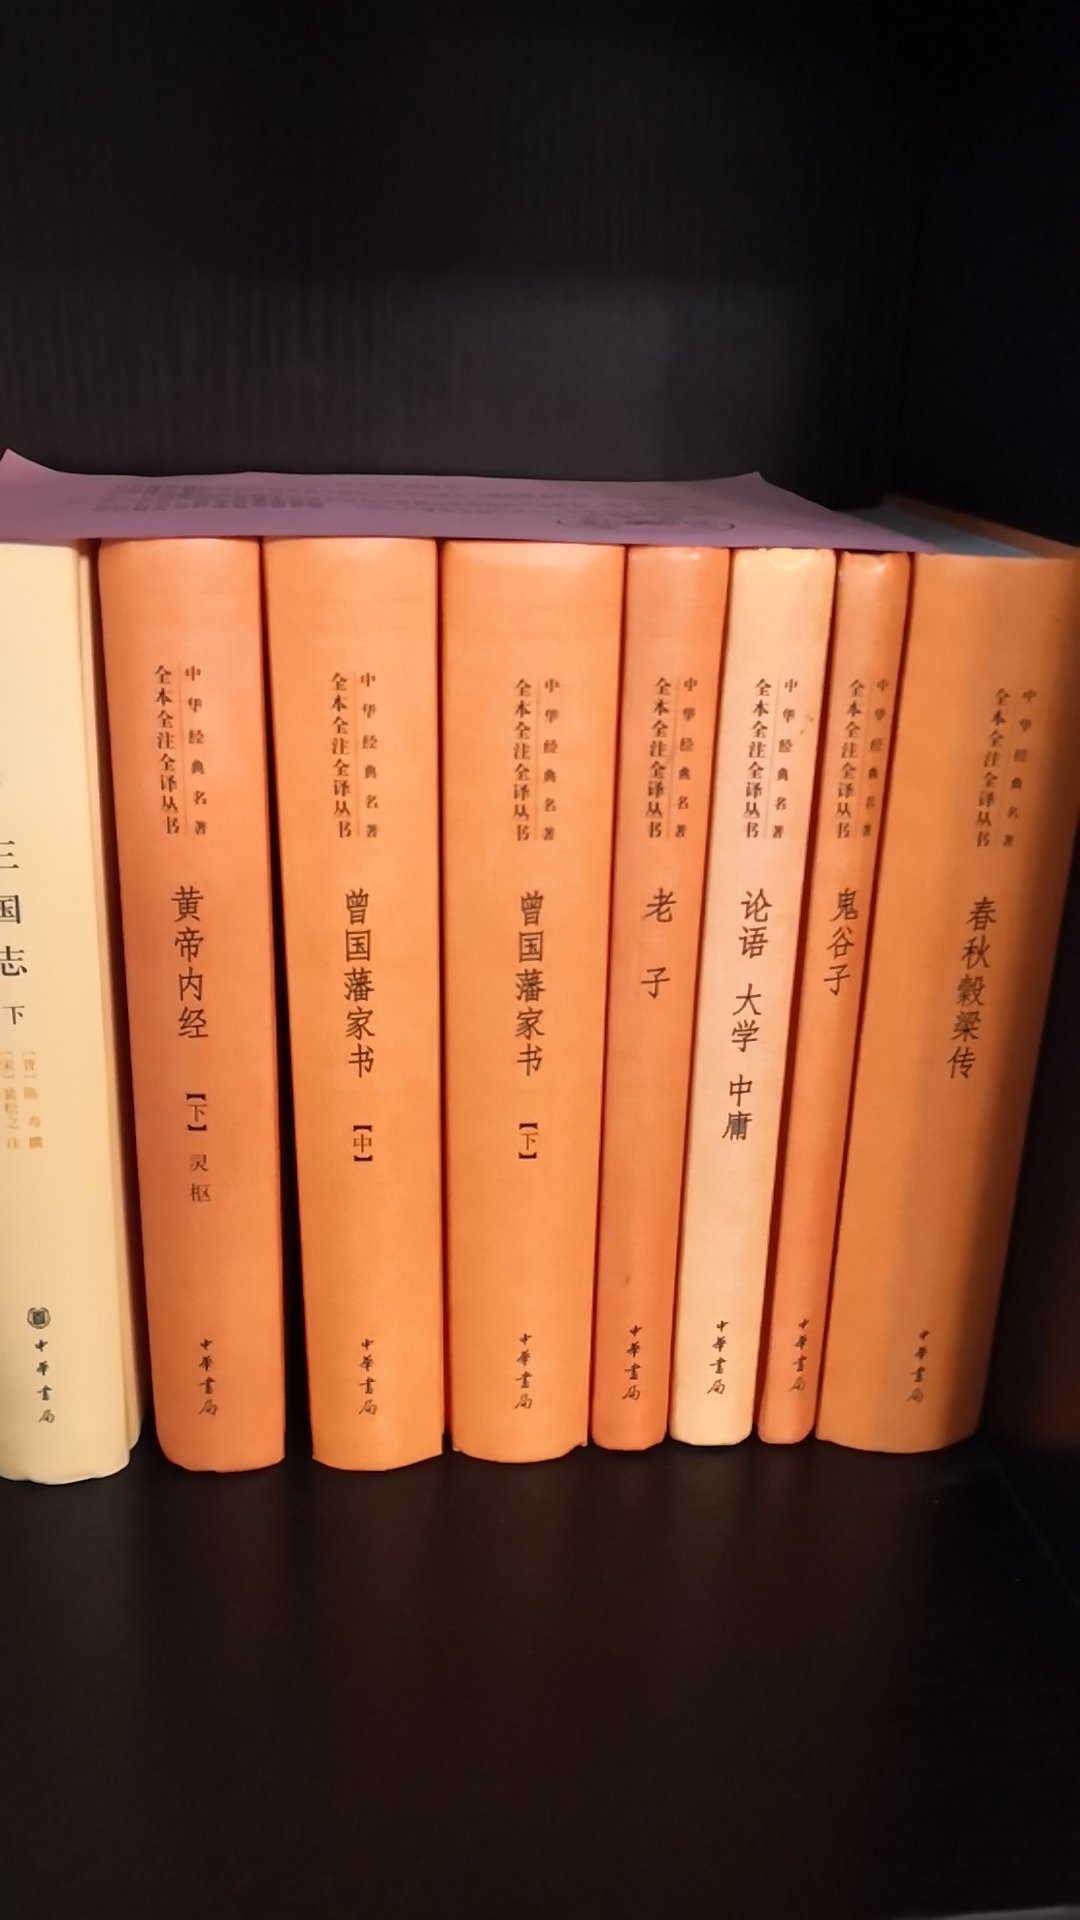 非常好中华书局出版的书，一直在看